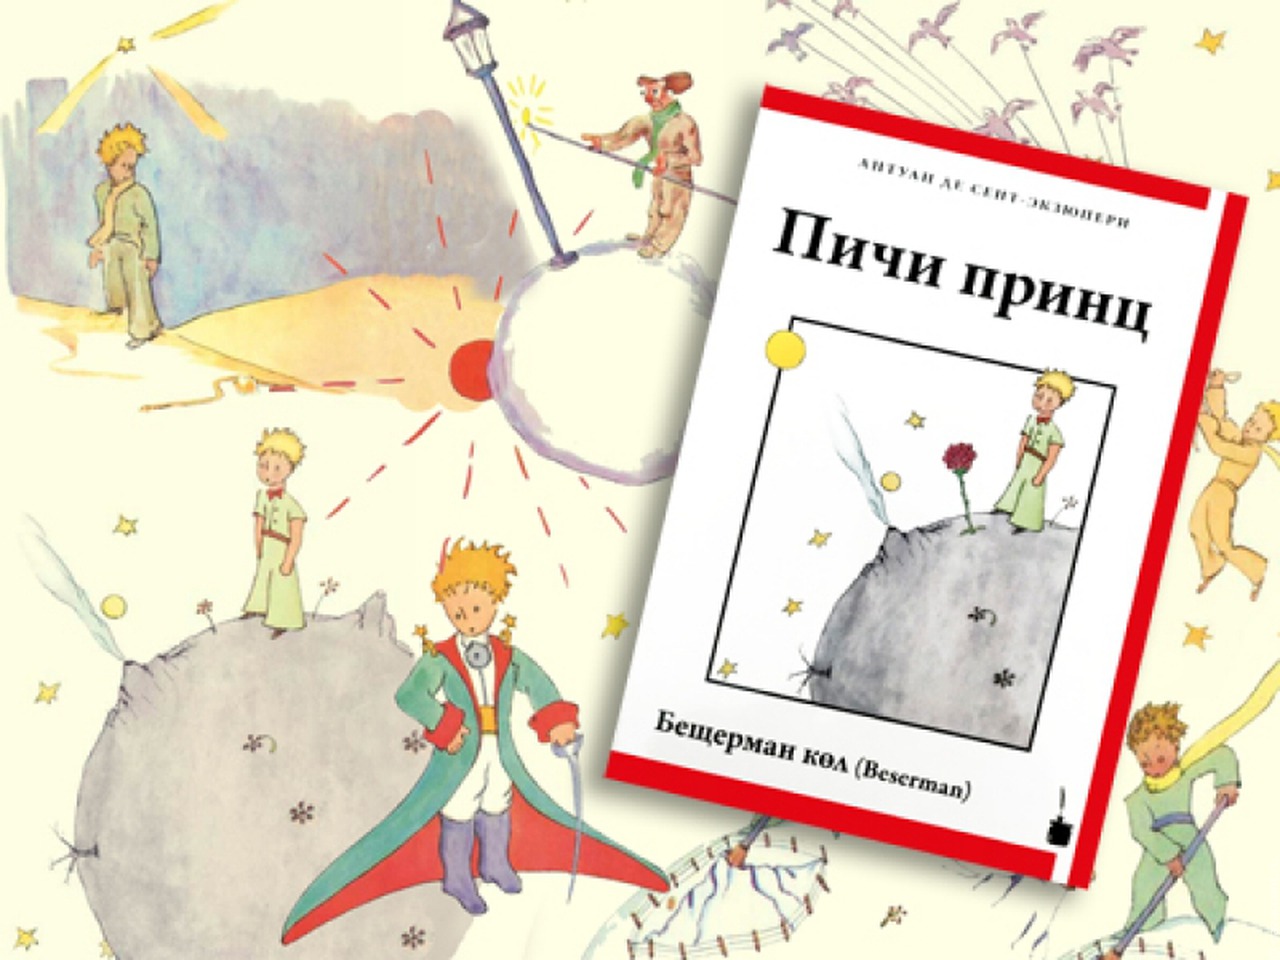 "Маленького принца" перевели на бесермянский язык